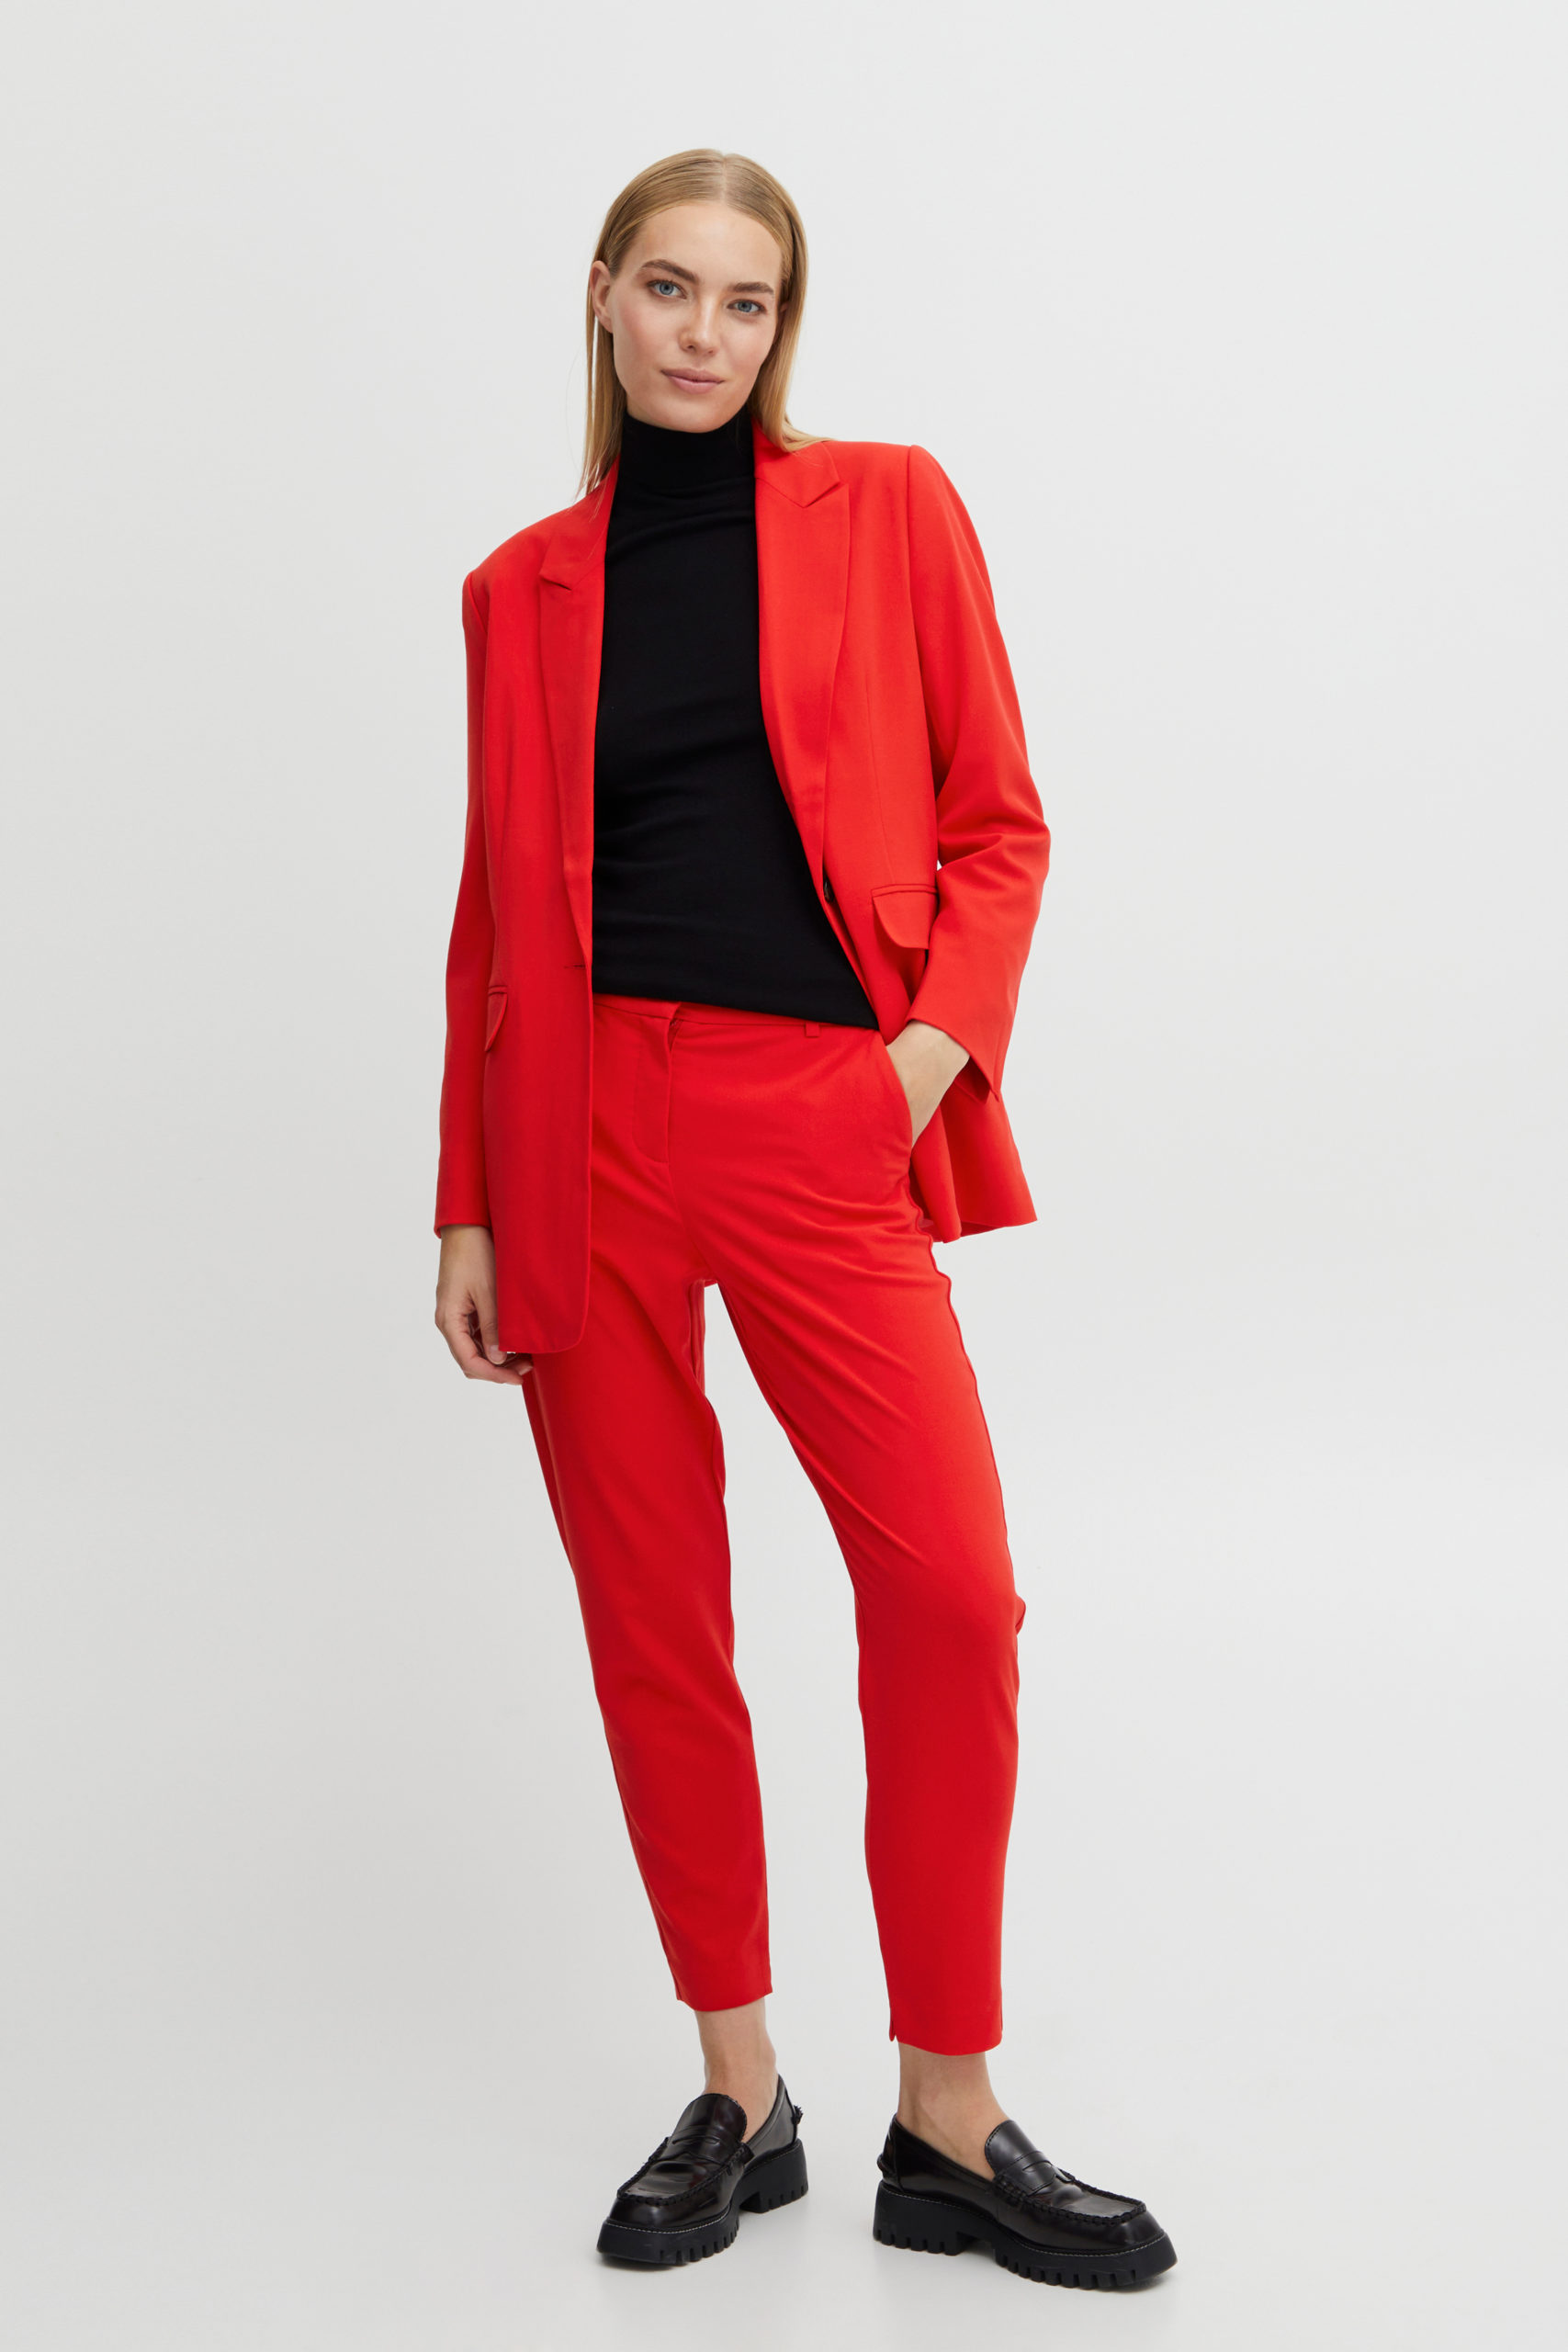 ByDanta Red Crop Pant suit